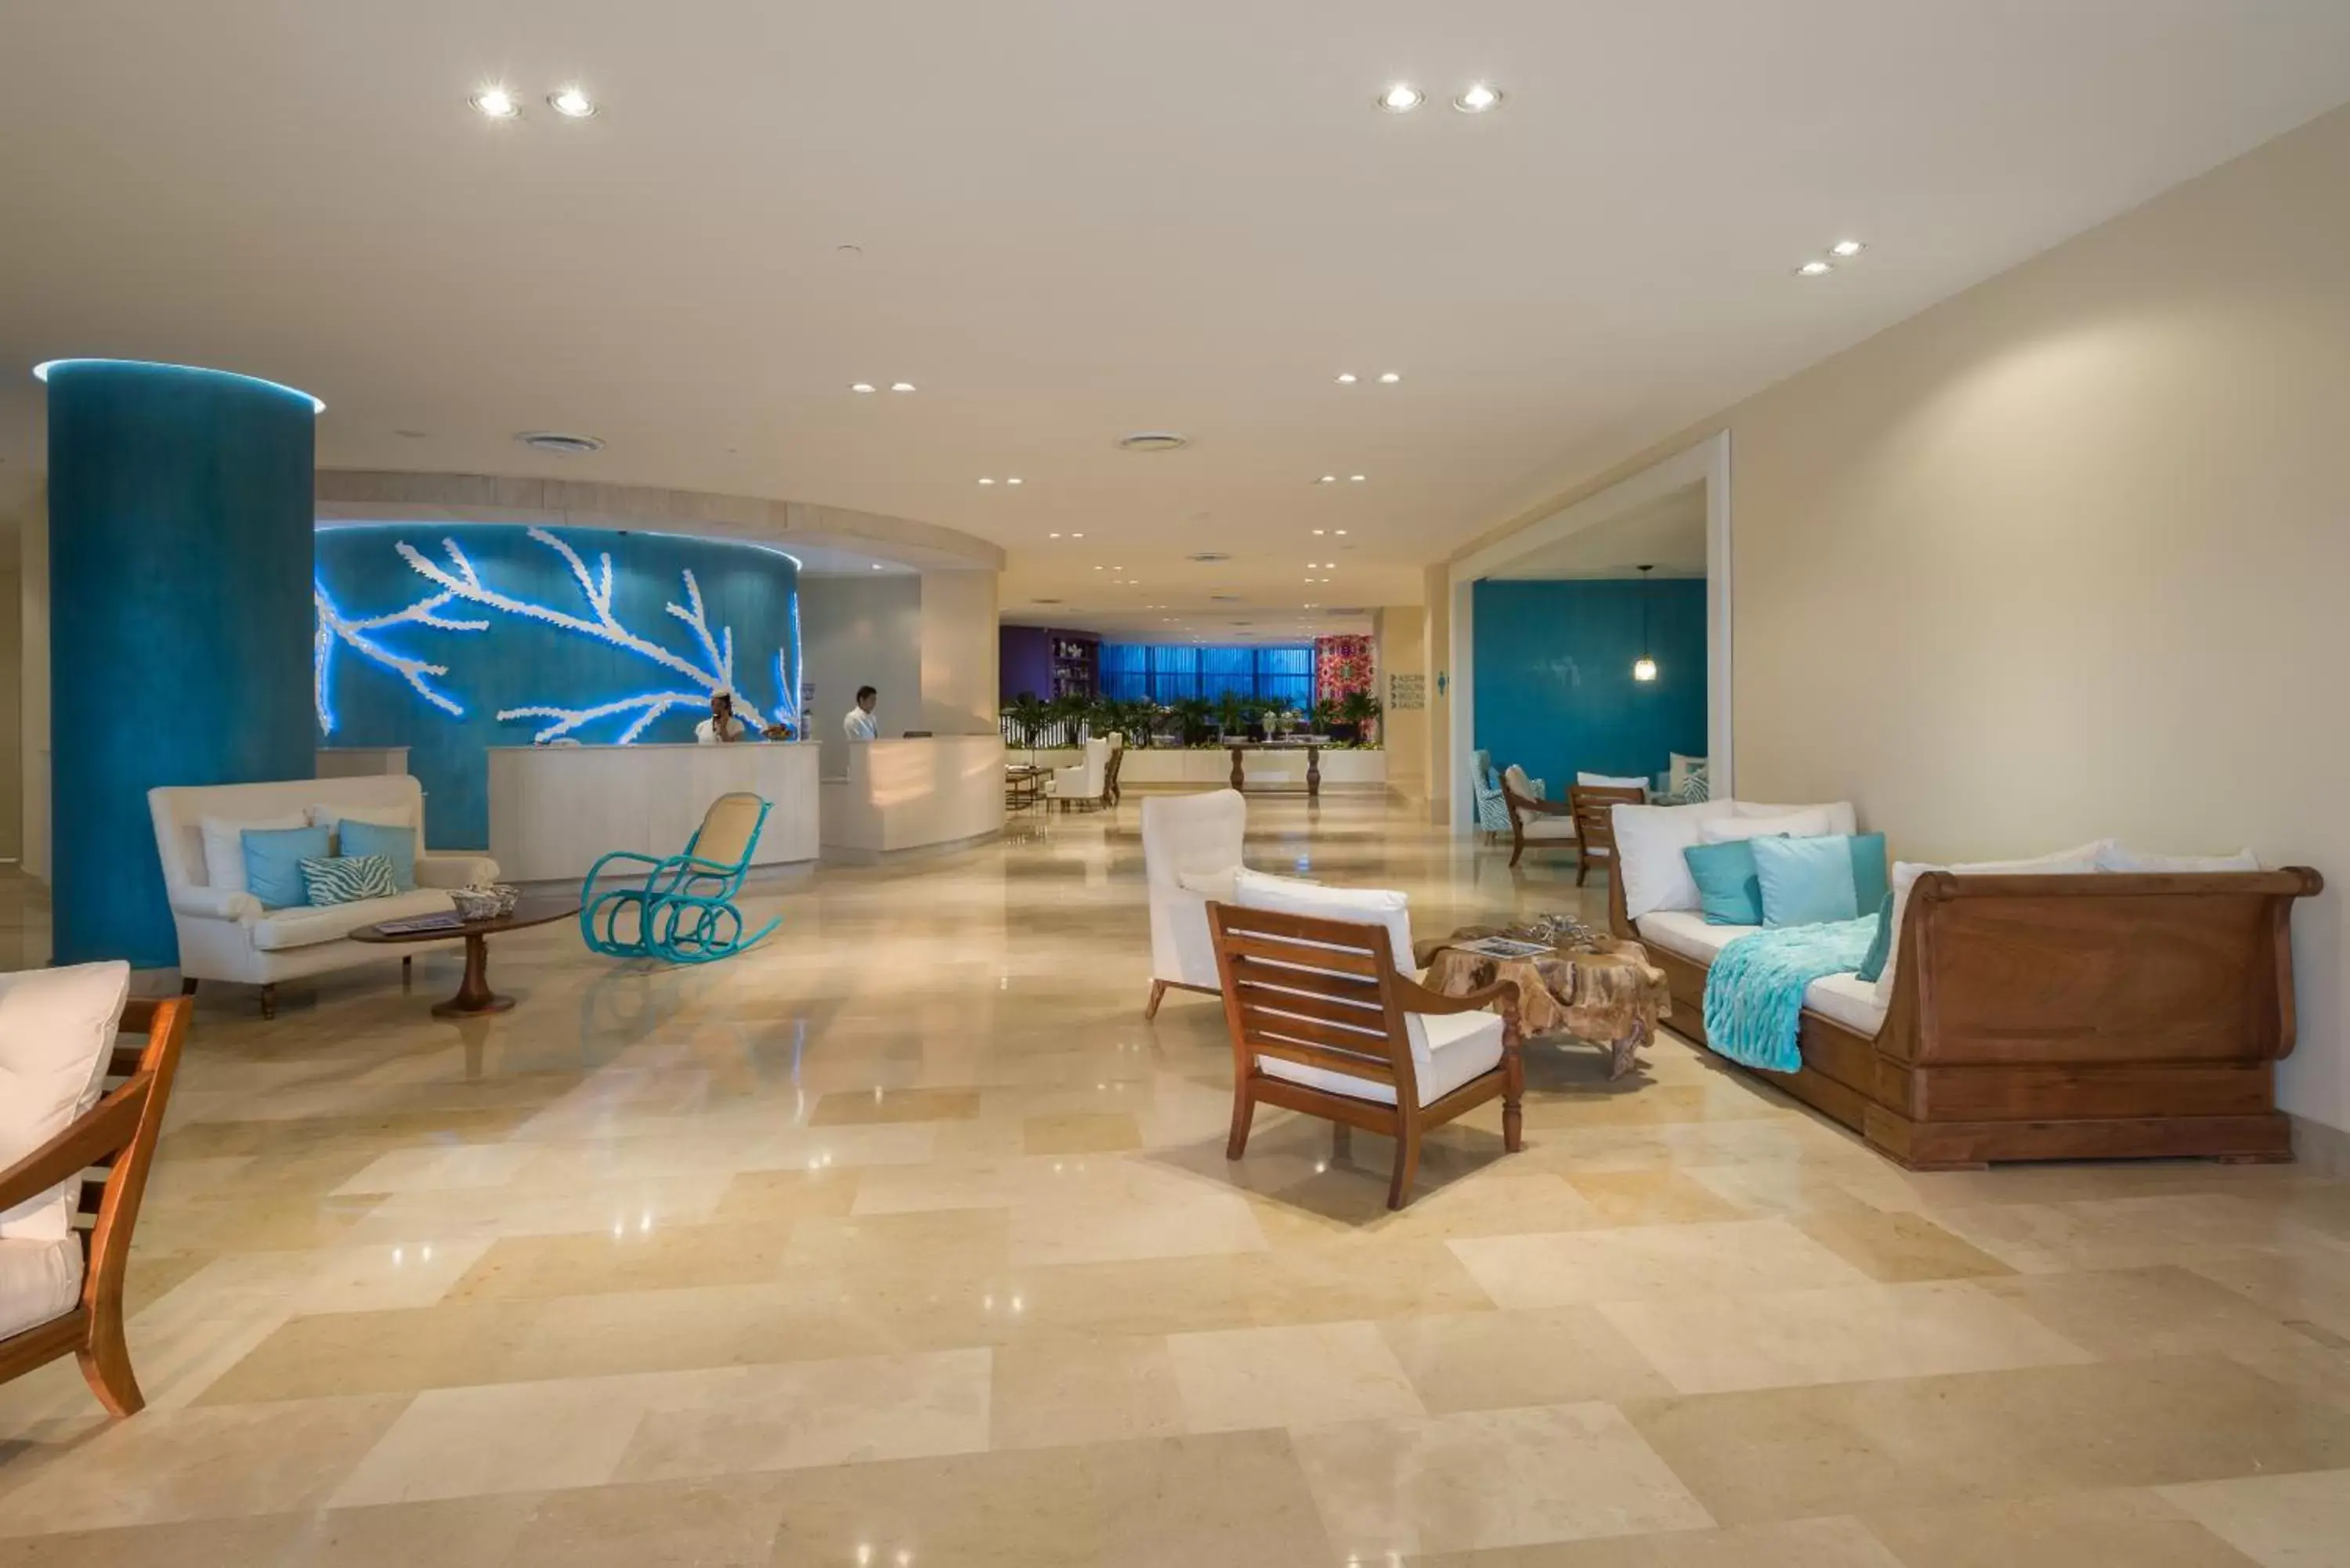 Lobby or reception in Radisson Cartagena Ocean Pavillion Hotel